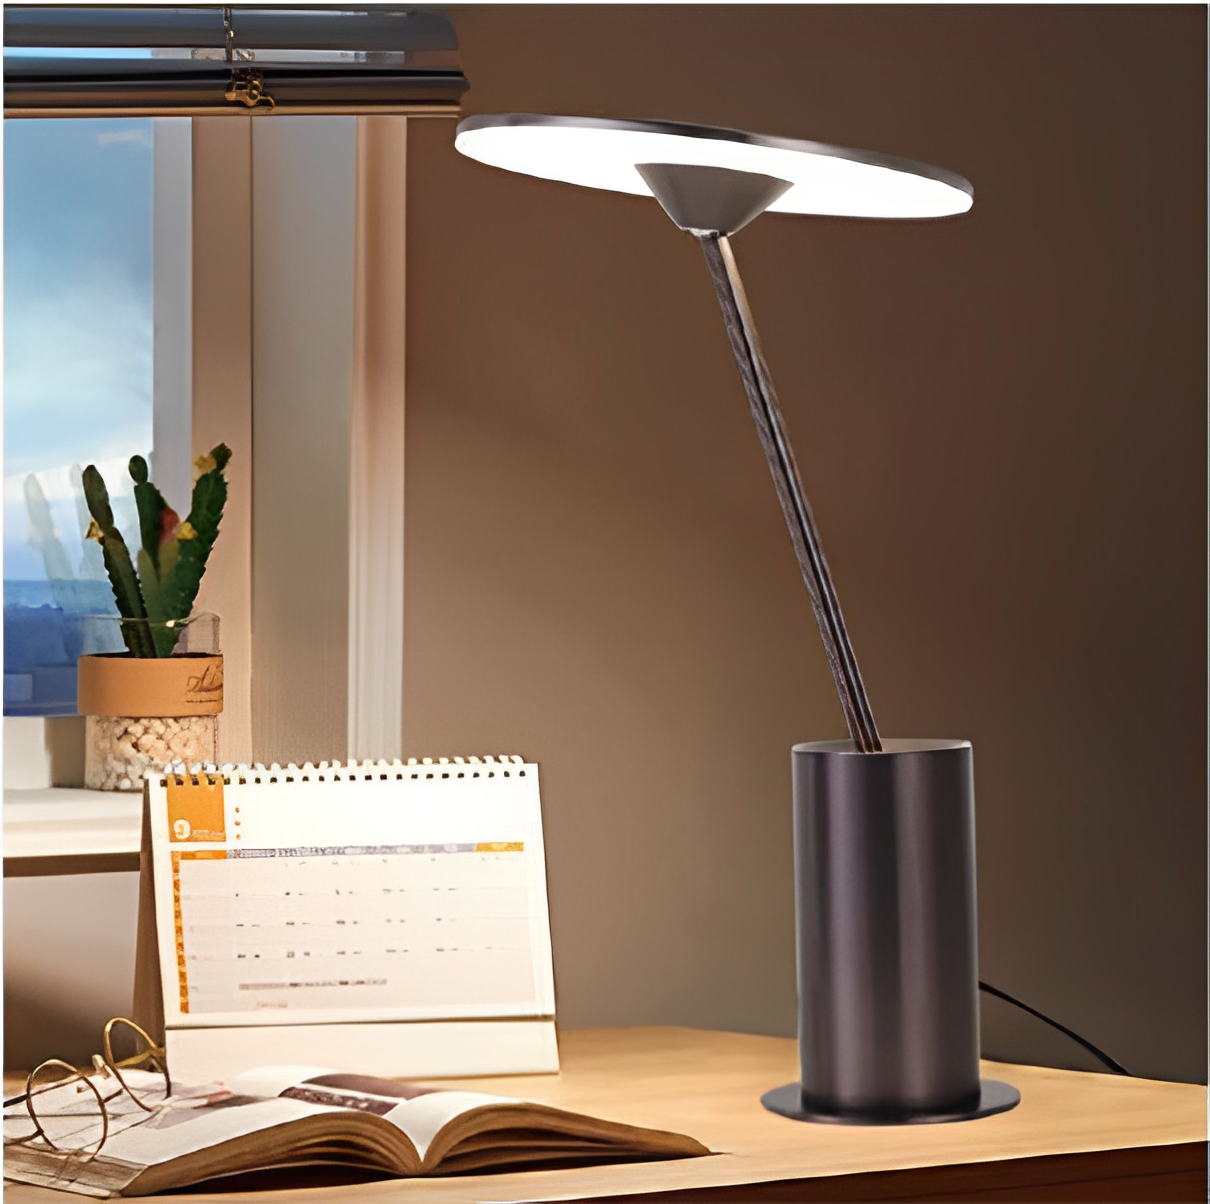 https://www.wonledlight.com/modern-creative-luxury-hotel-home-dekoracyjna-metalowa podstawa-po stronie łóżka-wewnętrzna-lampa stołowa led-product/